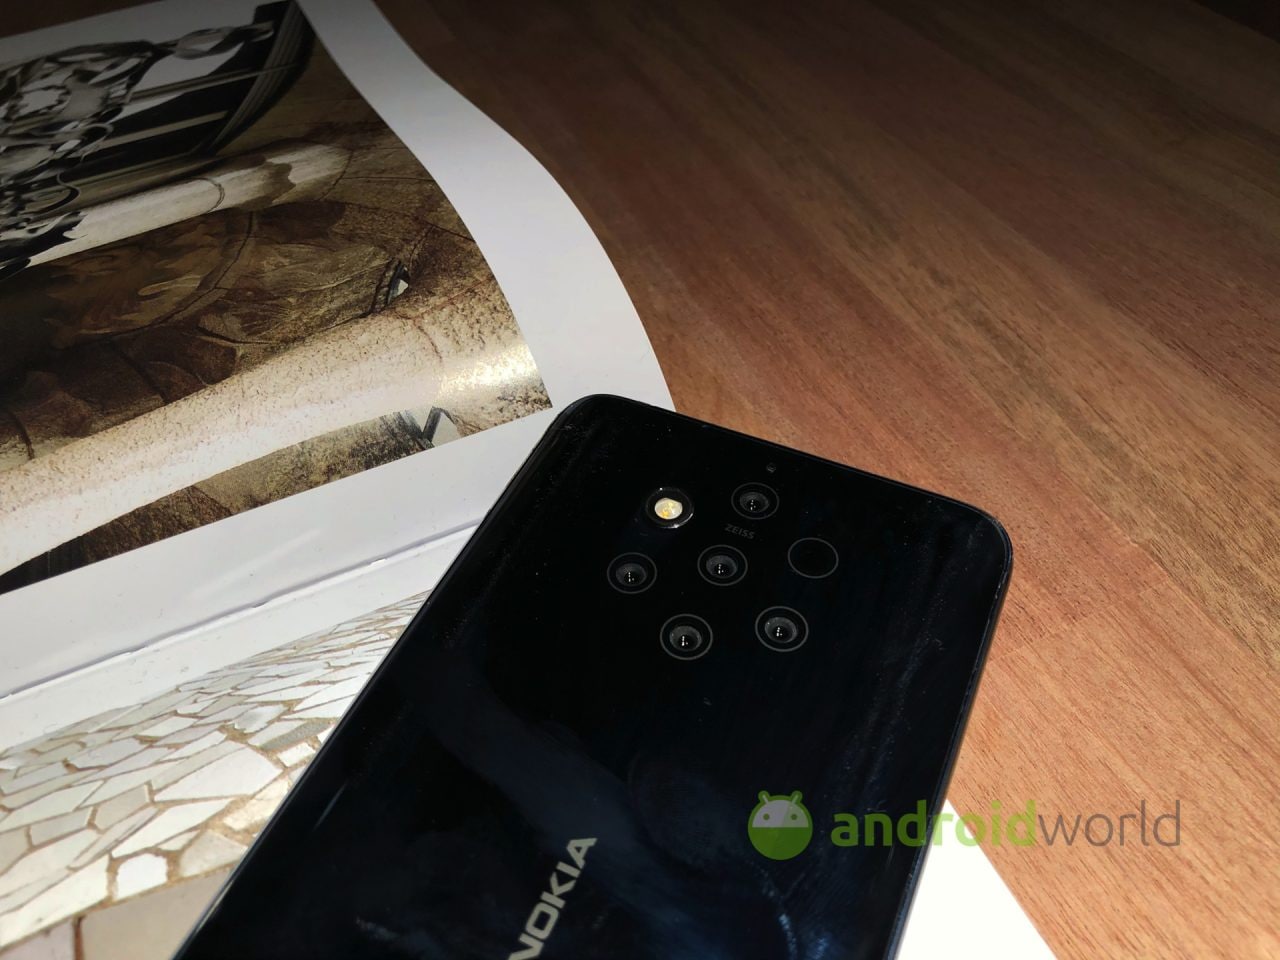 La nuova app fotocamera di Nokia nasconde indizi sul futuro: super zoom e modalità notturna in arrivo?